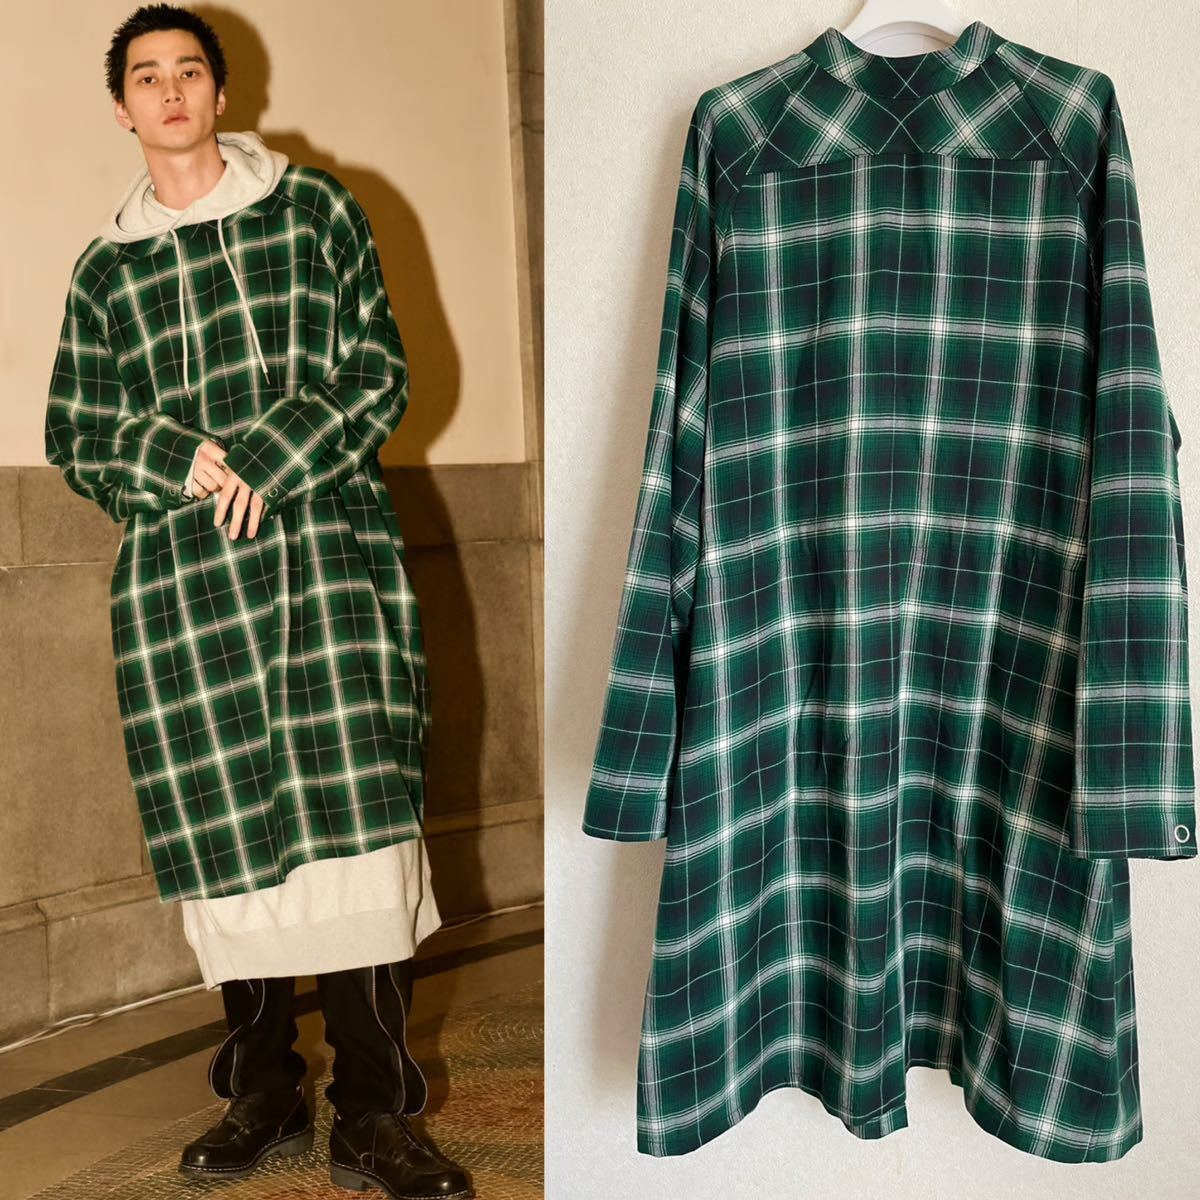 ソロイスト medical gown shirt (ombre check) / green 完売サイズ44